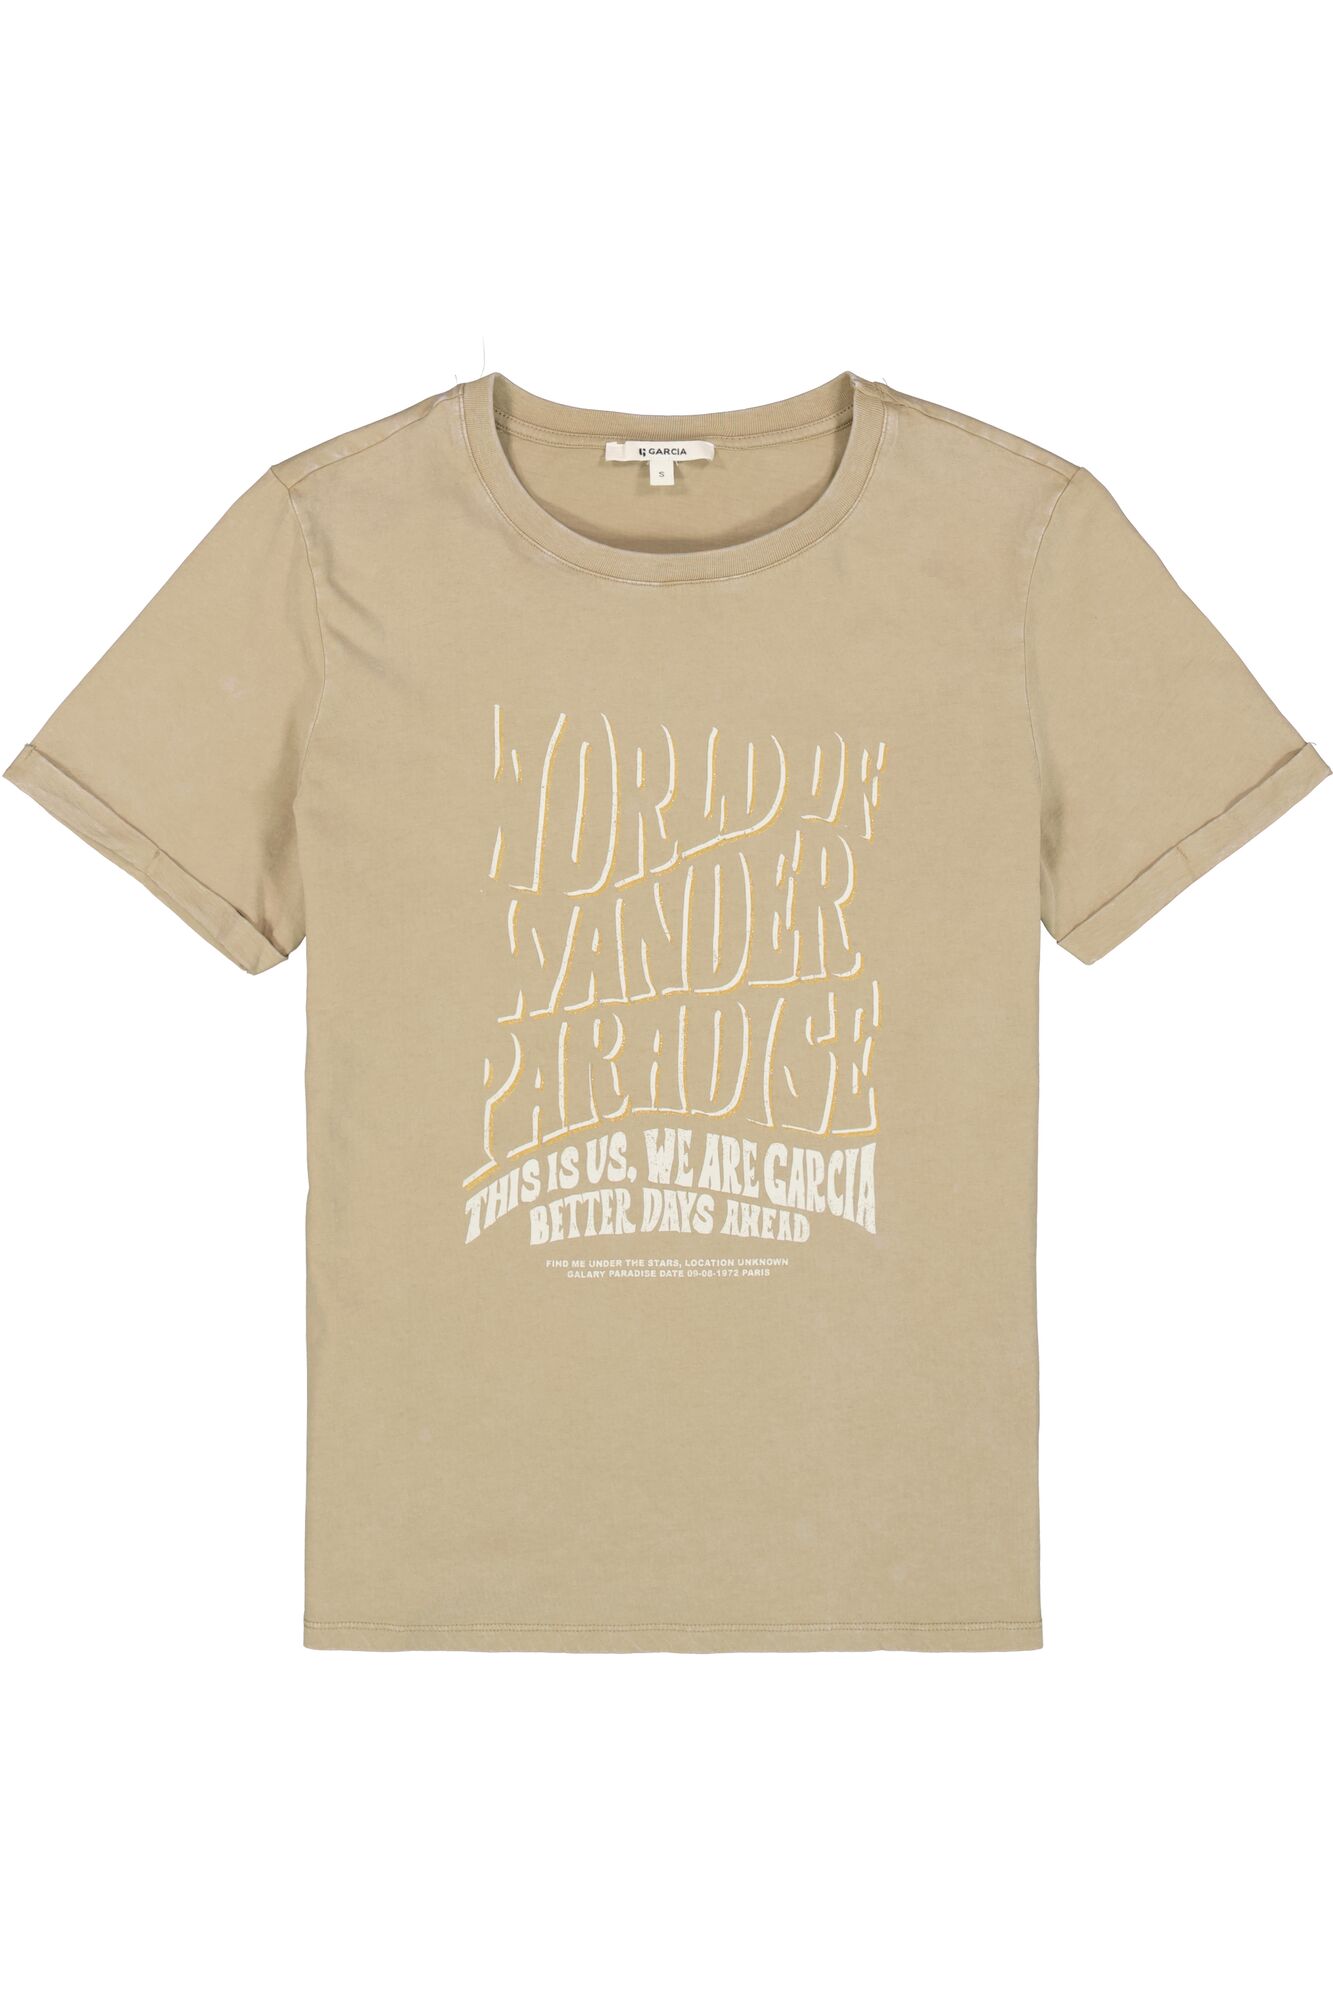 Garcia T-shirt 